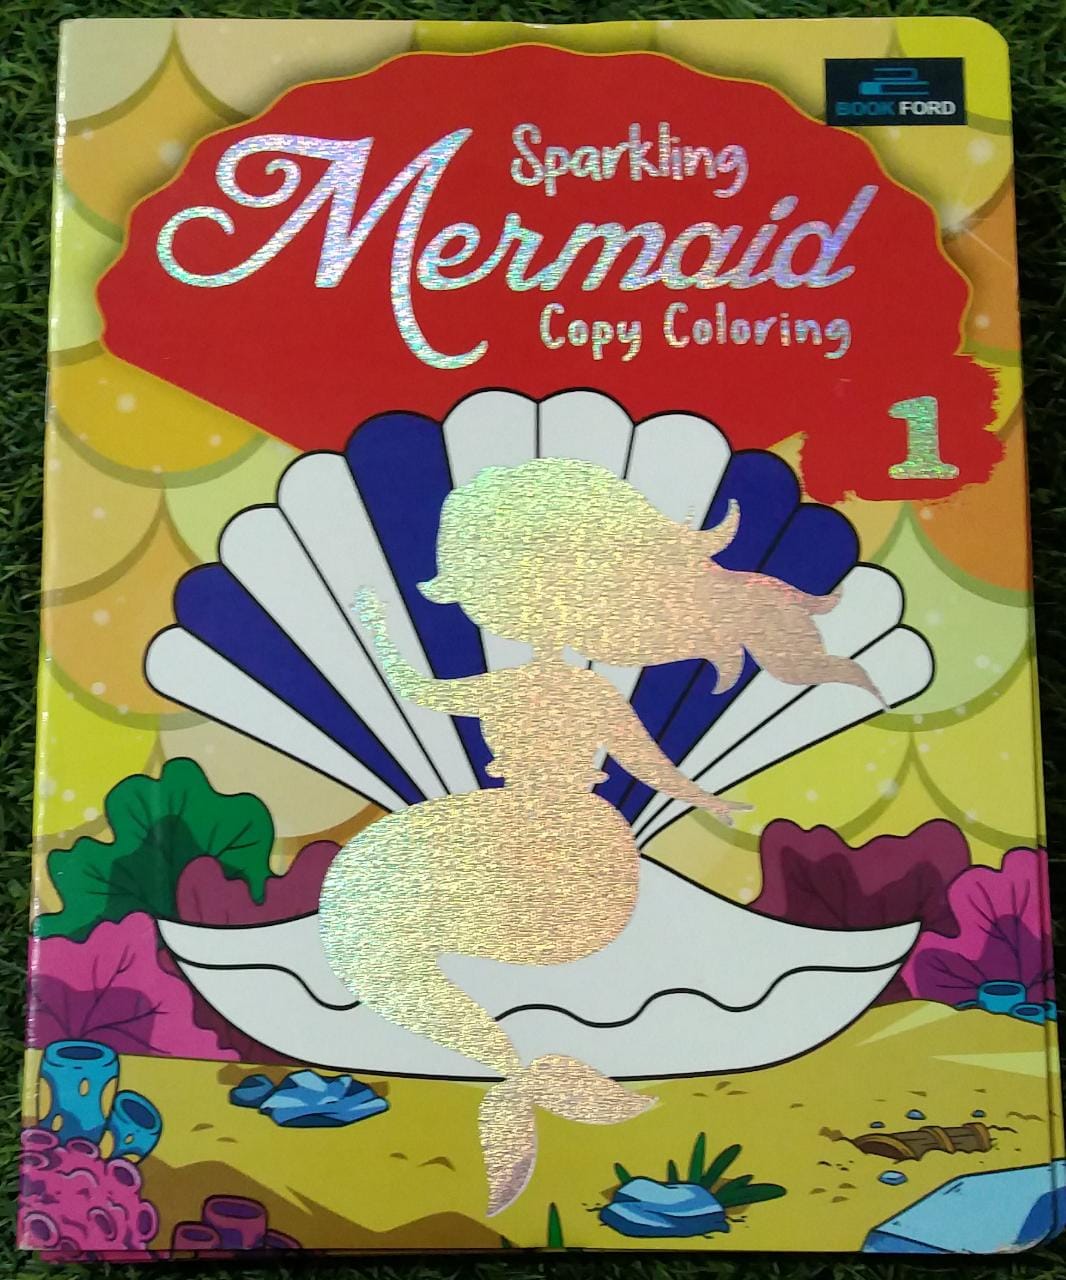 Sparkling Mermaid Copy Coloring 1